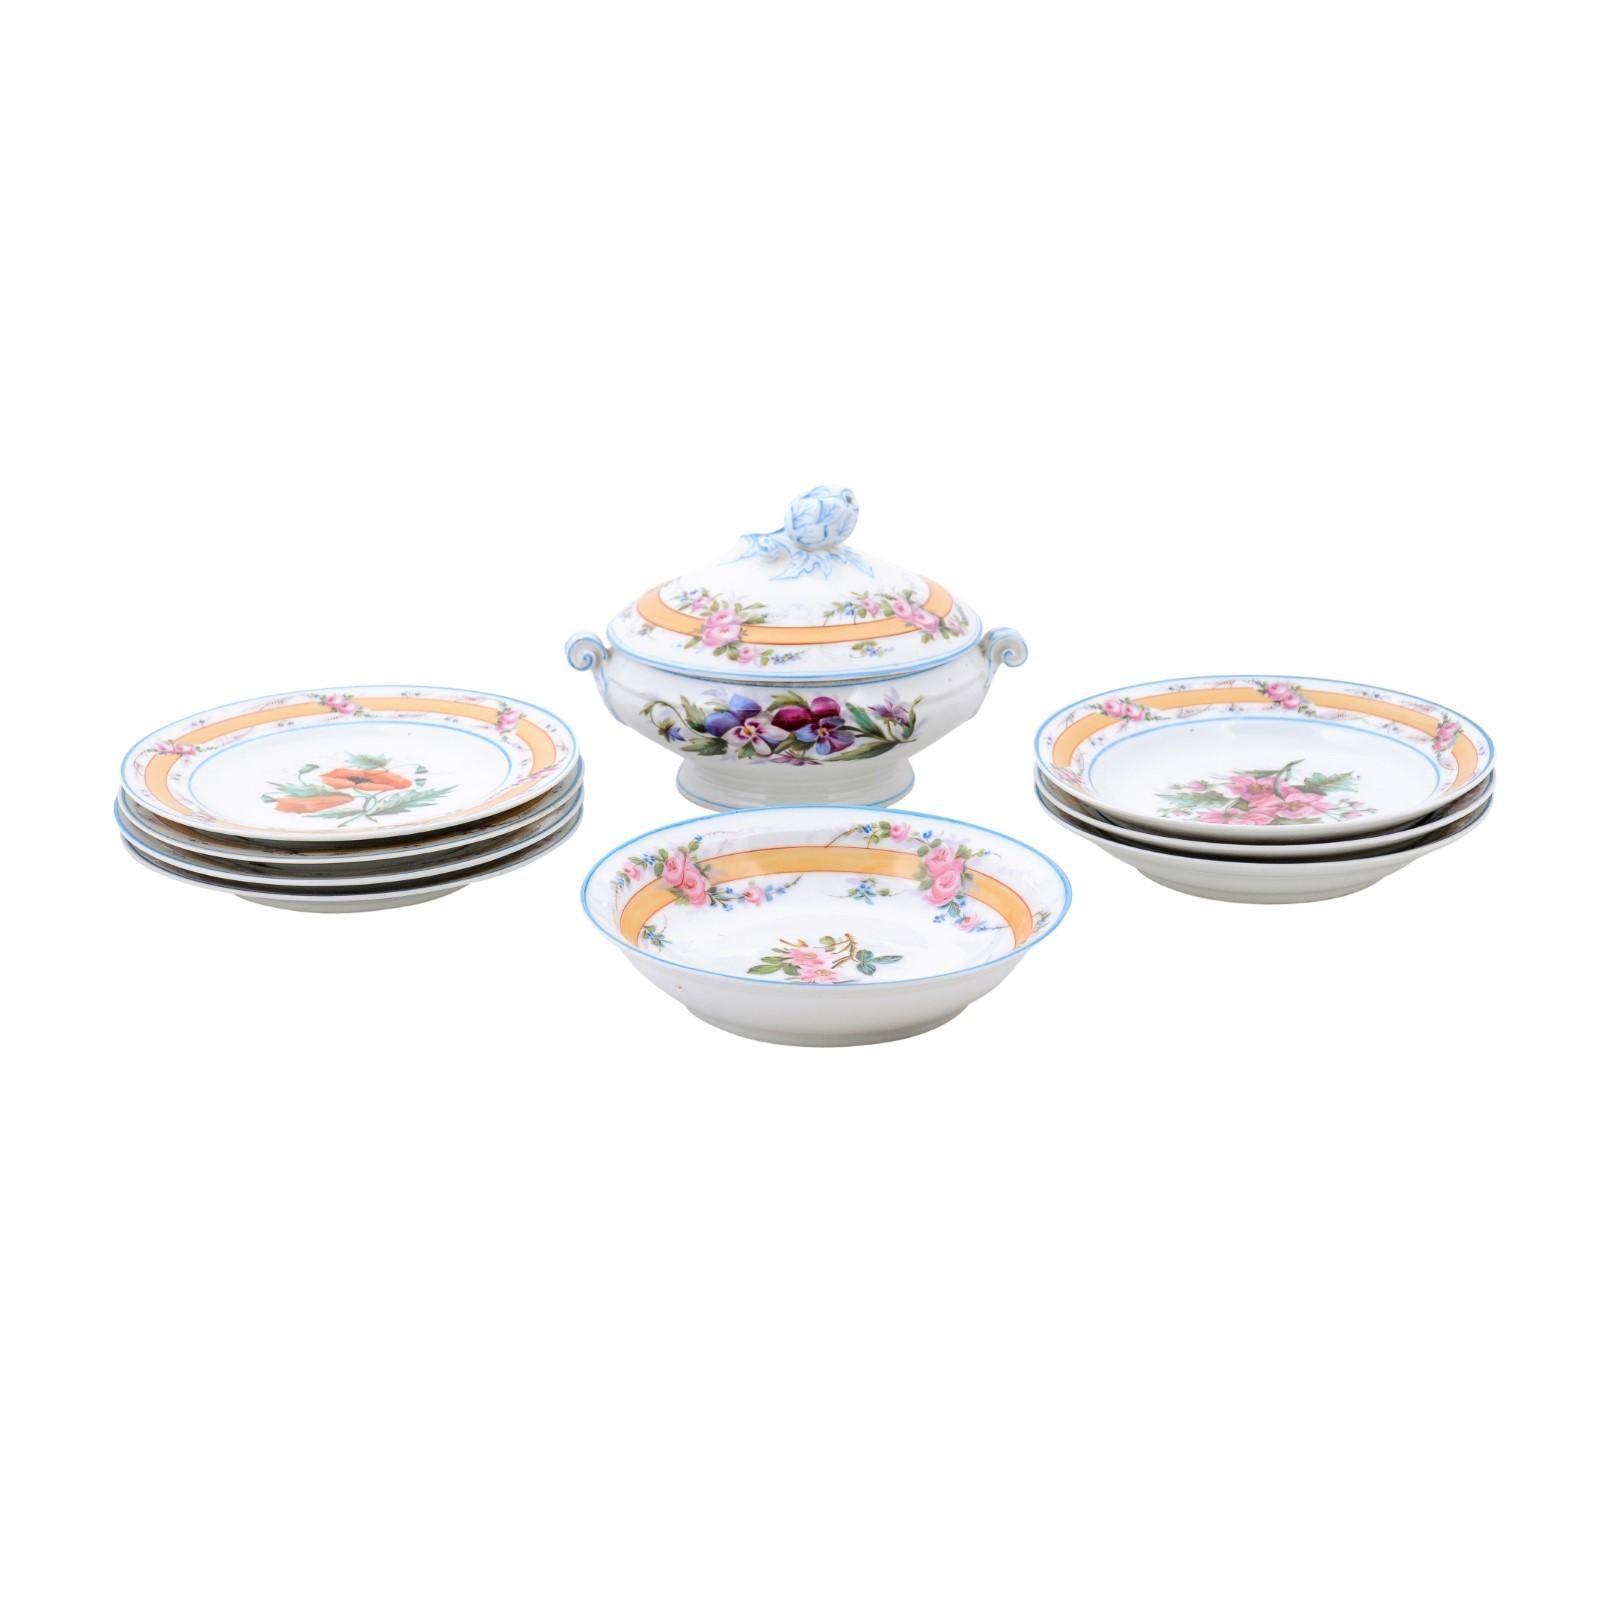 Porcelaine de Paris 19th Century Floral Dish Set with Casserole and Plates For Sale